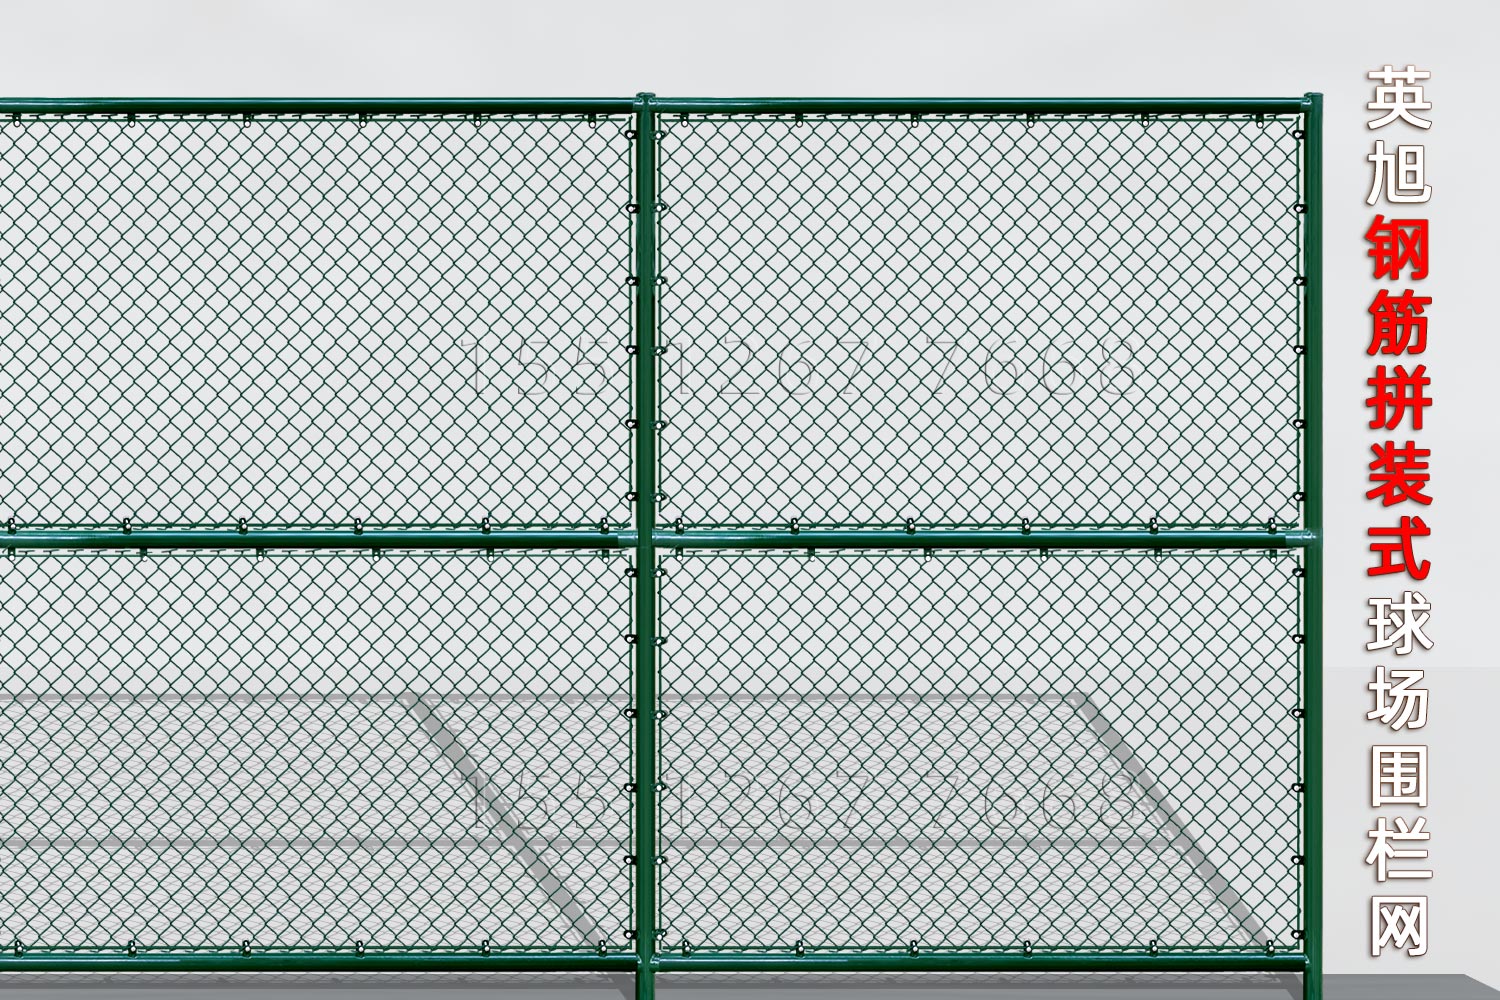 海南钢筋组装式球场围栏网